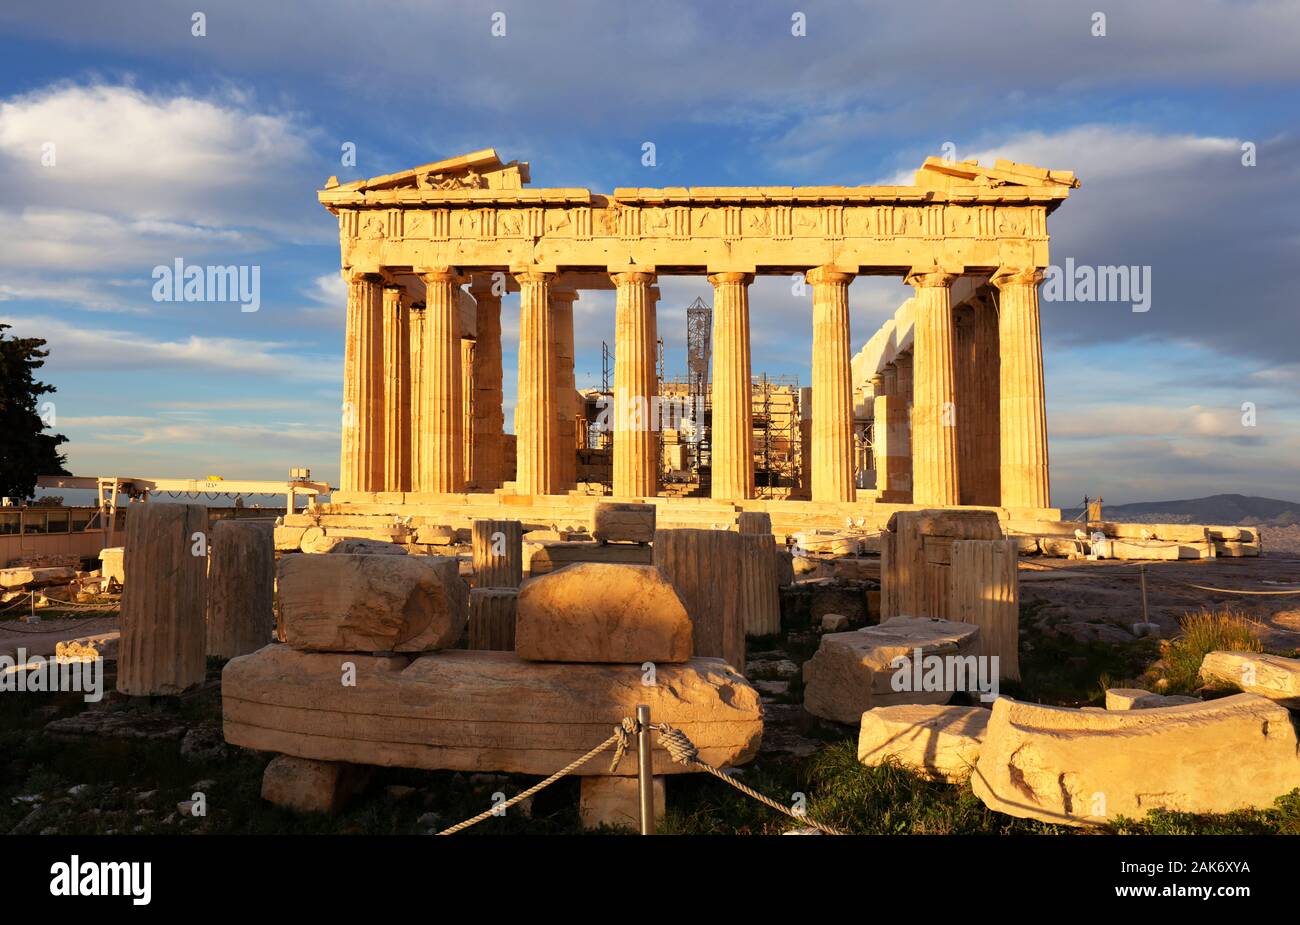 Parthenon temple on day. Acropolis in Athens, Greece Stock Photo